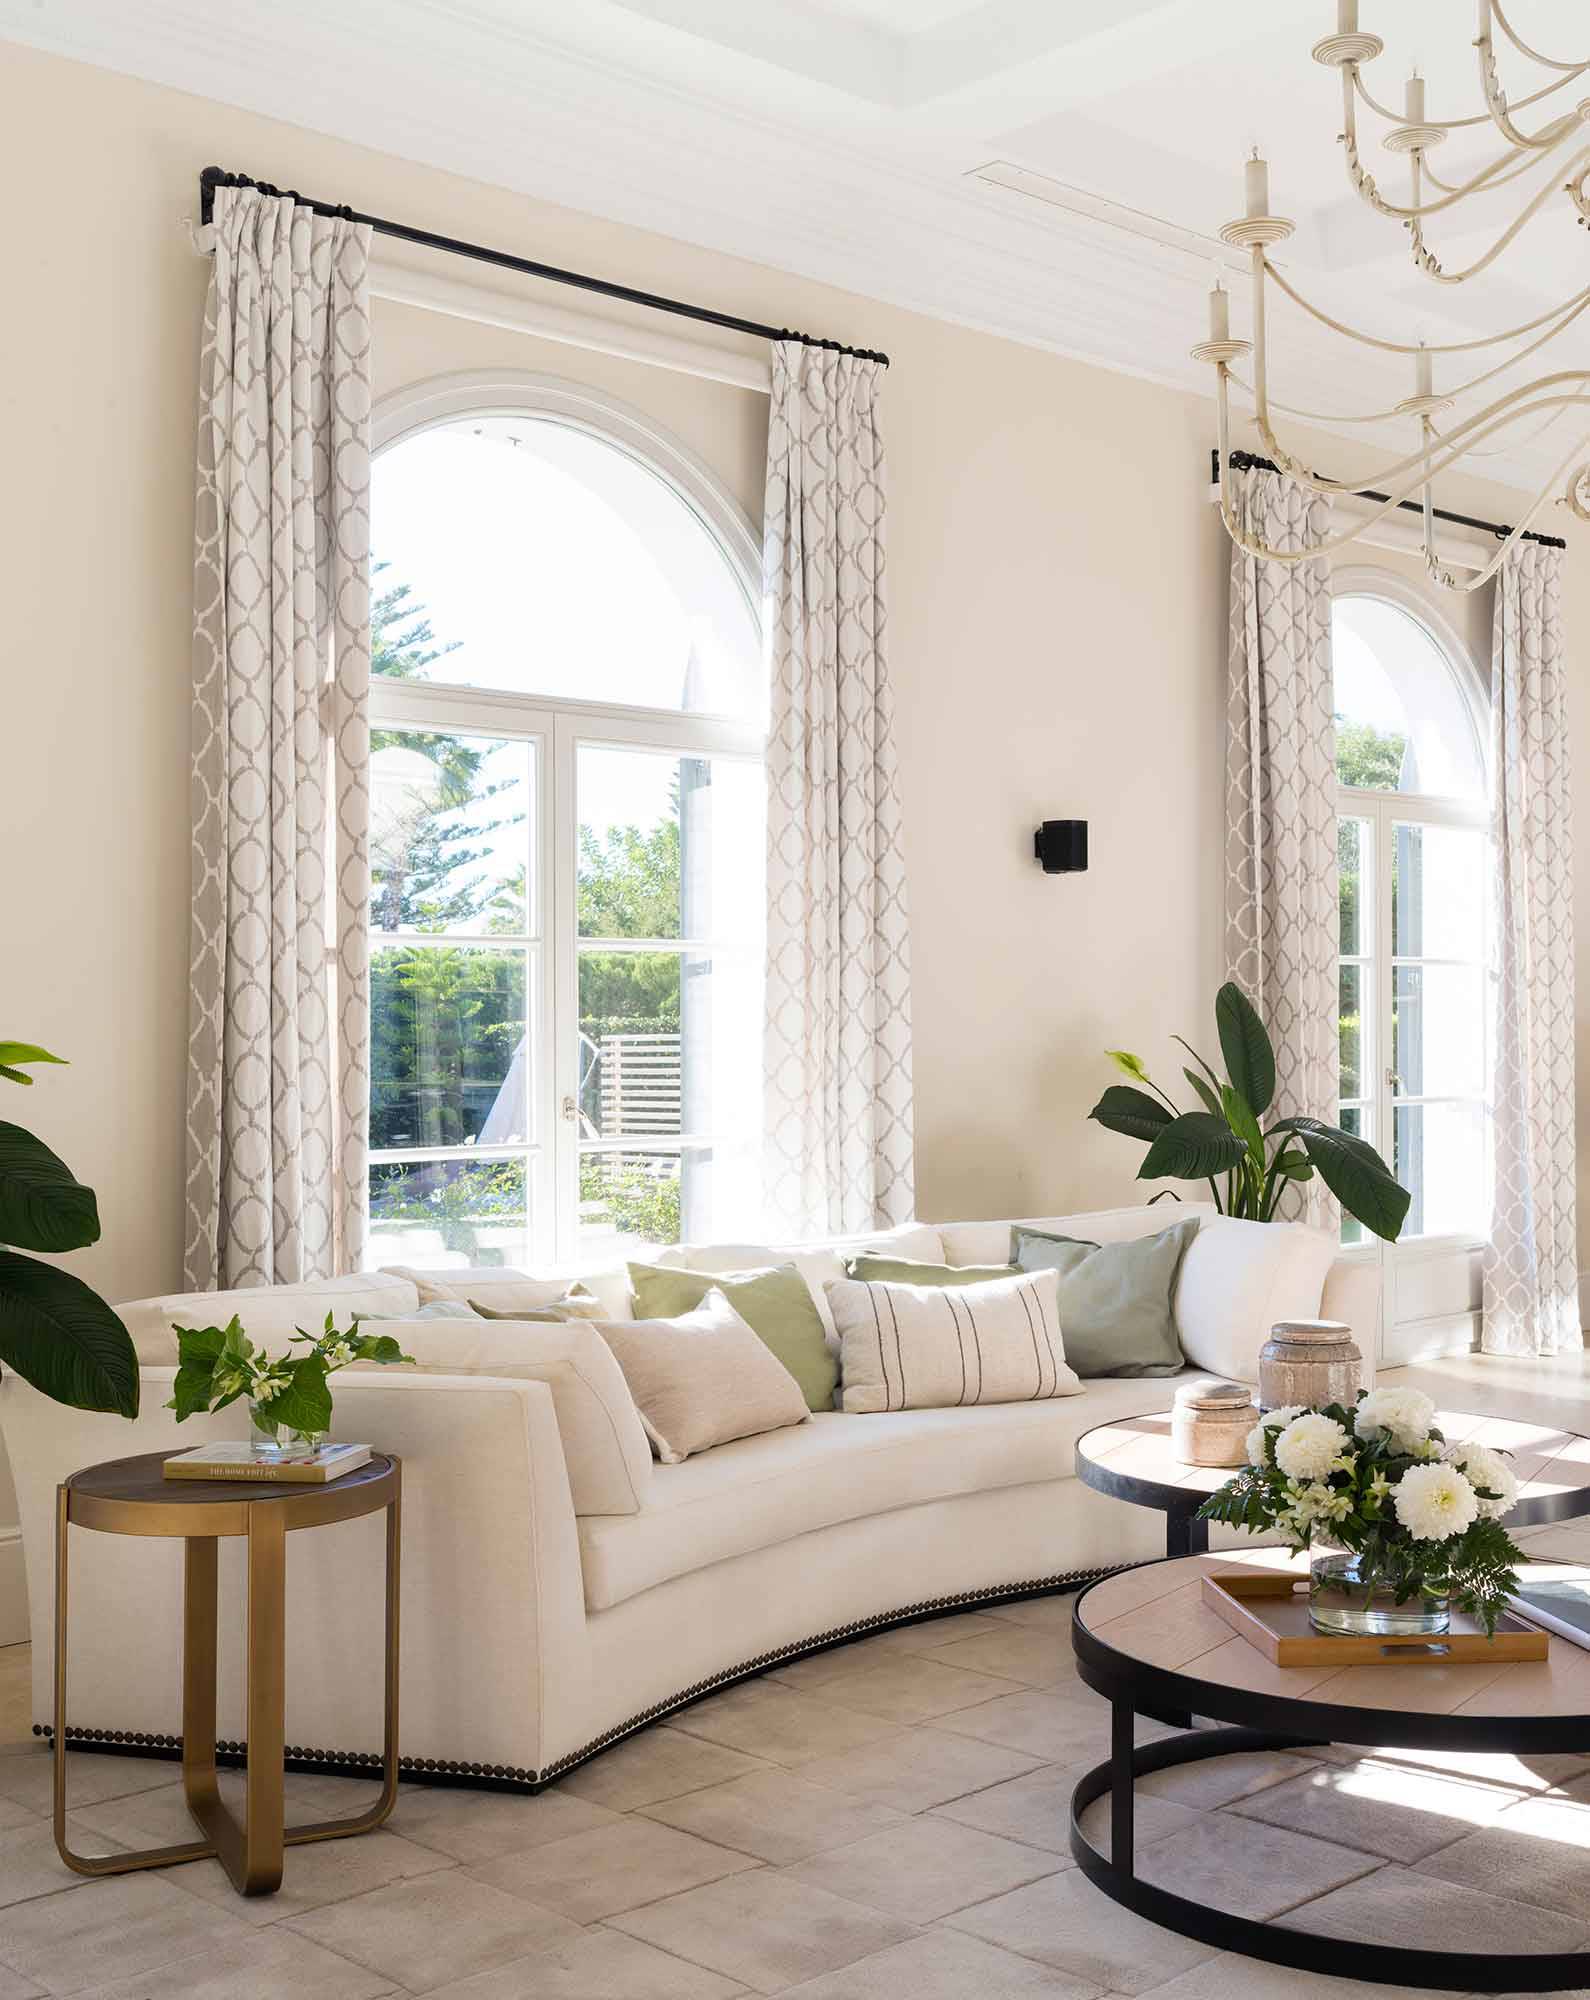 Salón clásico con techos altos, sofá en curva y cortinas estampadas.